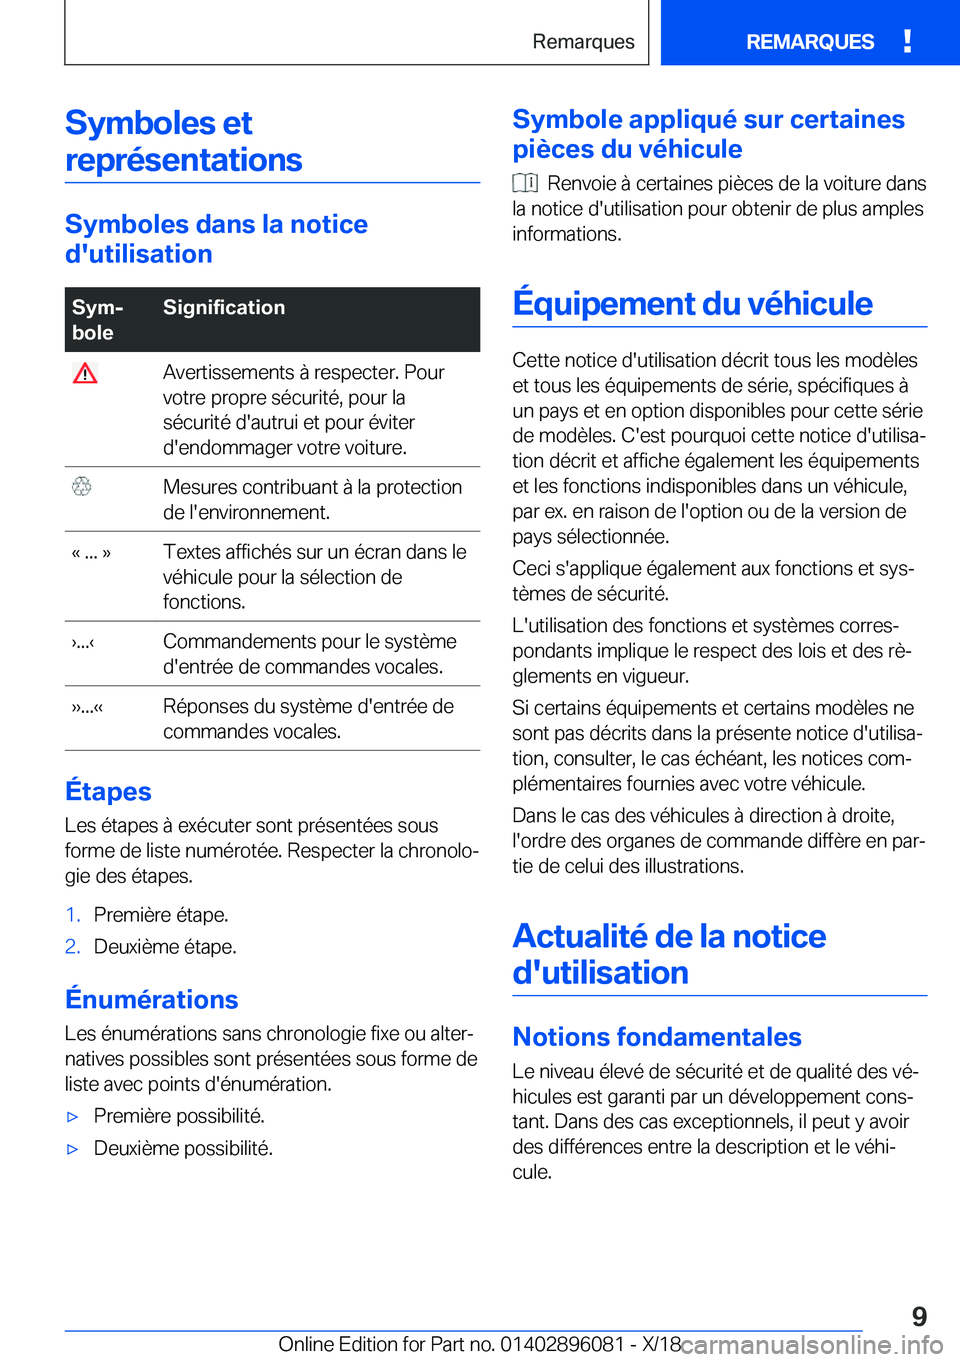 BMW X6 2019  Notices Demploi (in French) �S�y�m�b�o�l�e�s��e�t�r�e�p�r�é�s�e�n�t�a�t�i�o�n�s
�S�y�m�b�o�l�e�s��d�a�n�s��l�a��n�o�t�i�c�e
�d�'�u�t�i�l�i�s�a�t�i�o�n
�S�y�mj
�b�o�l�e�S�i�g�n�i�f�i�c�a�t�i�o�n��A�v�e�r�t�i�s�s�e�m�e�